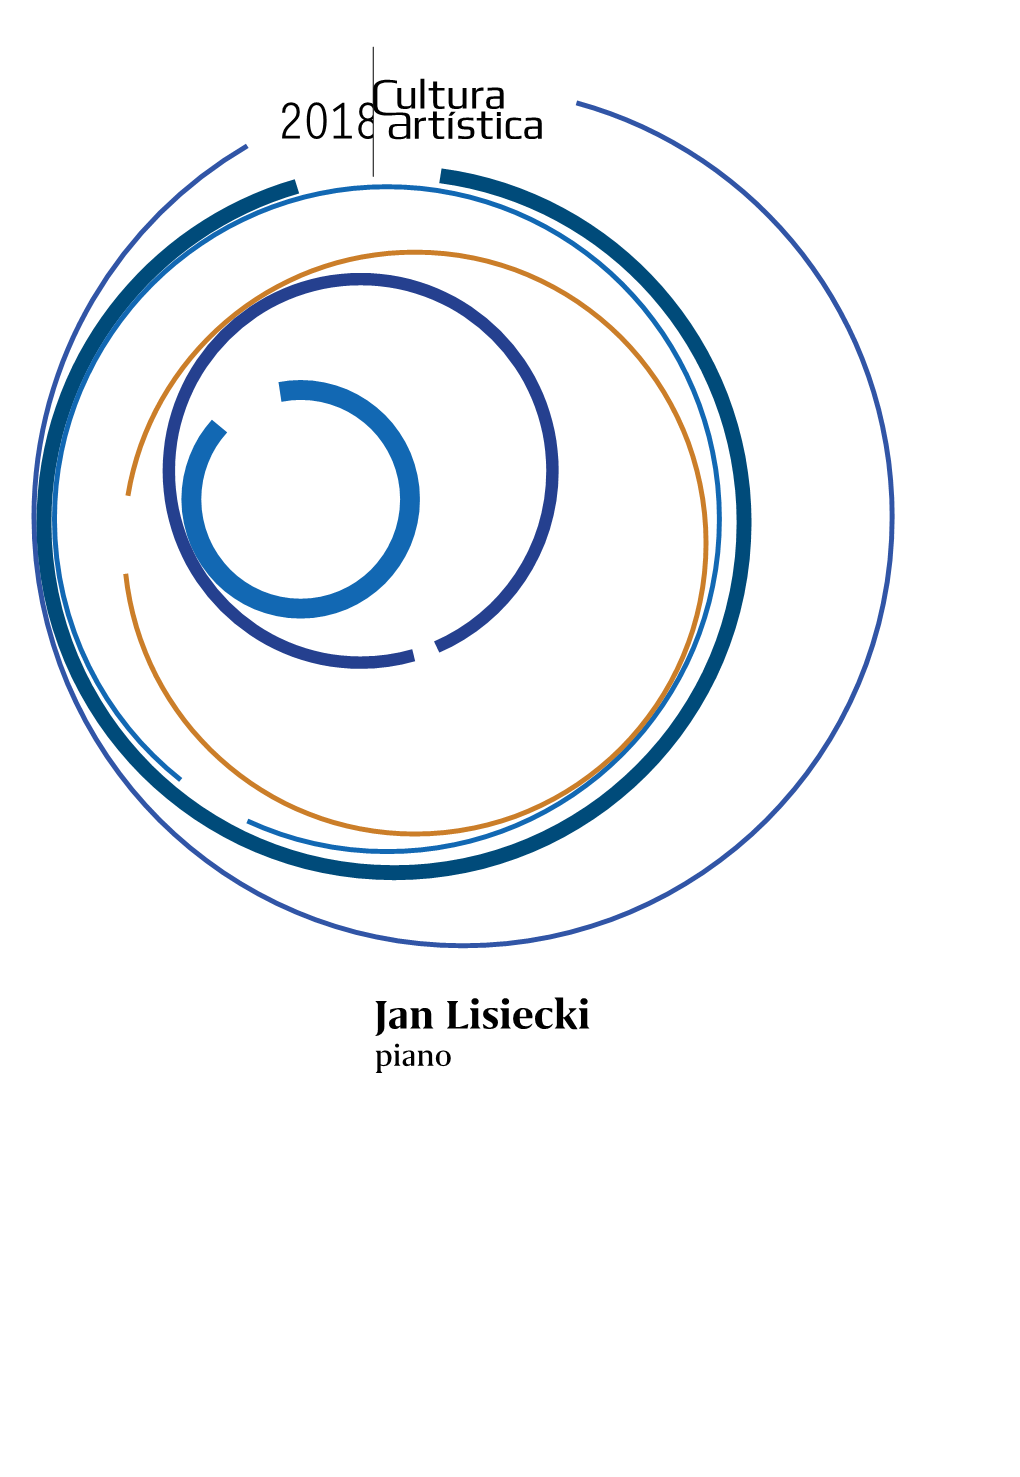 Jan Lisiecki Piano Educativo Cultura Artística